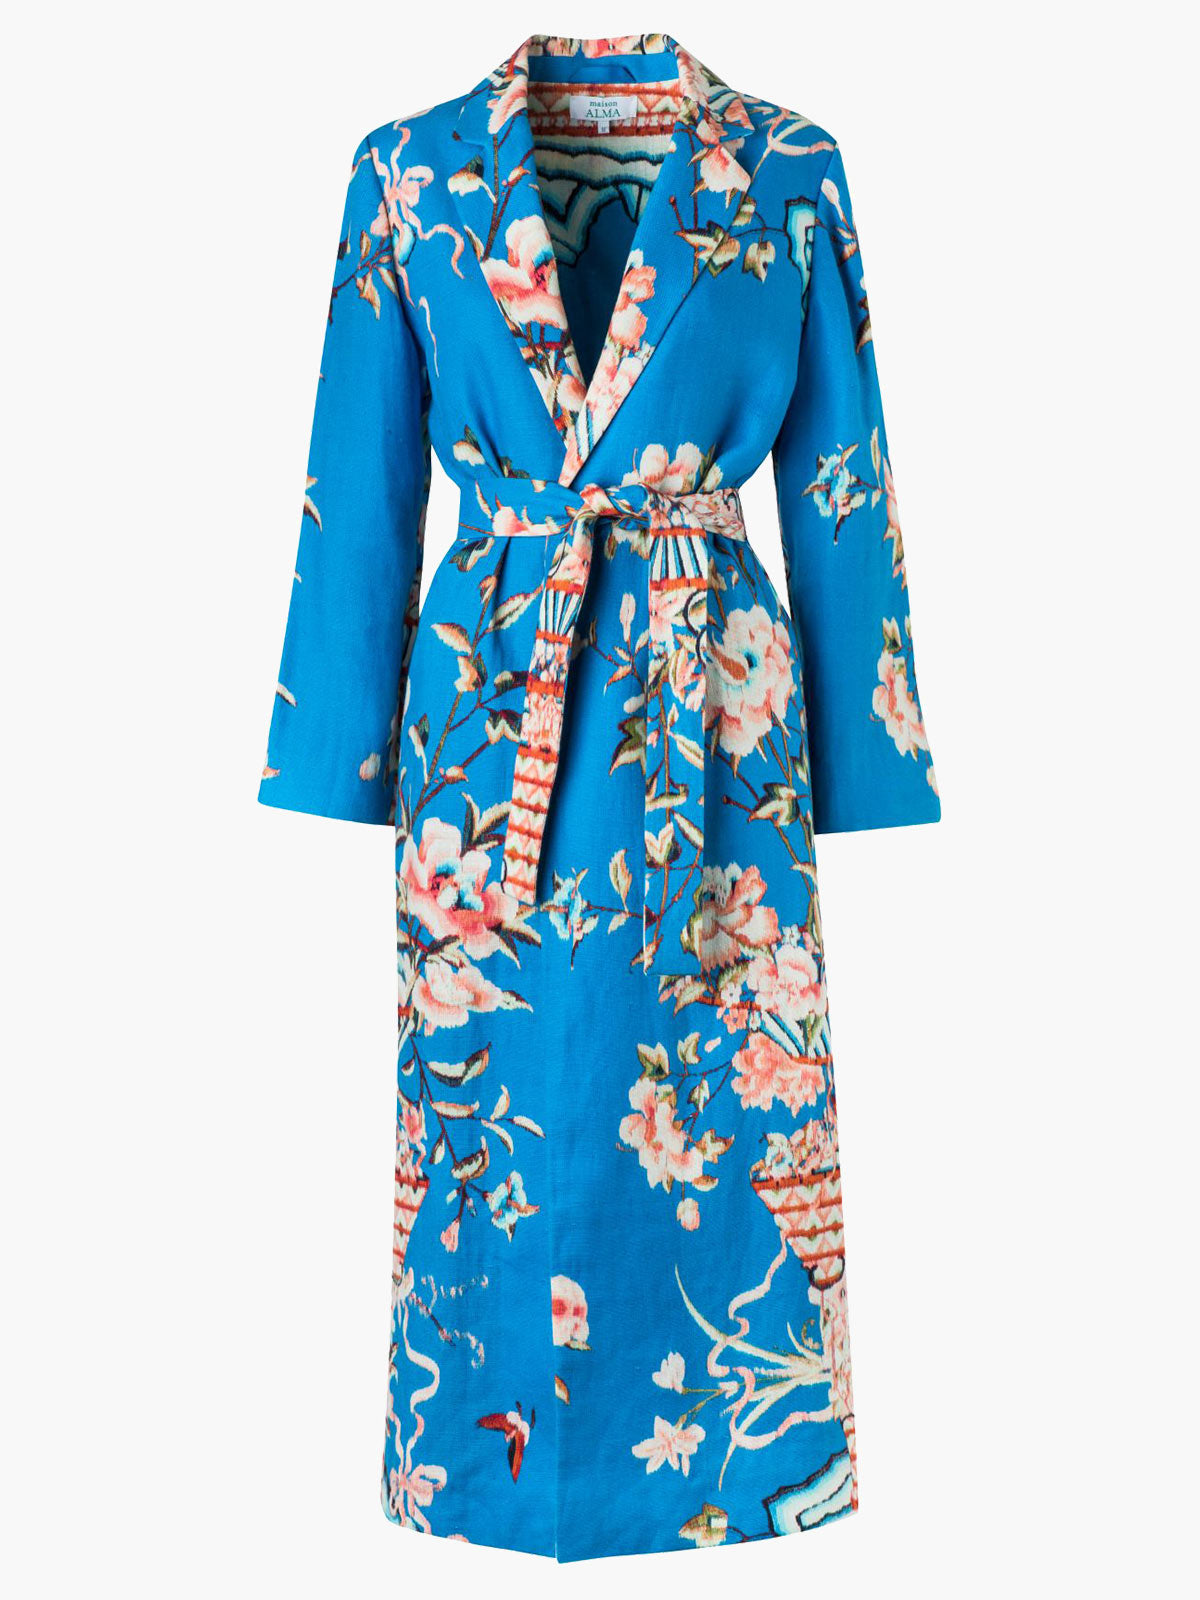 Kimono | Mar y Rosas Kimono | Mar y Rosas - Fashionkind